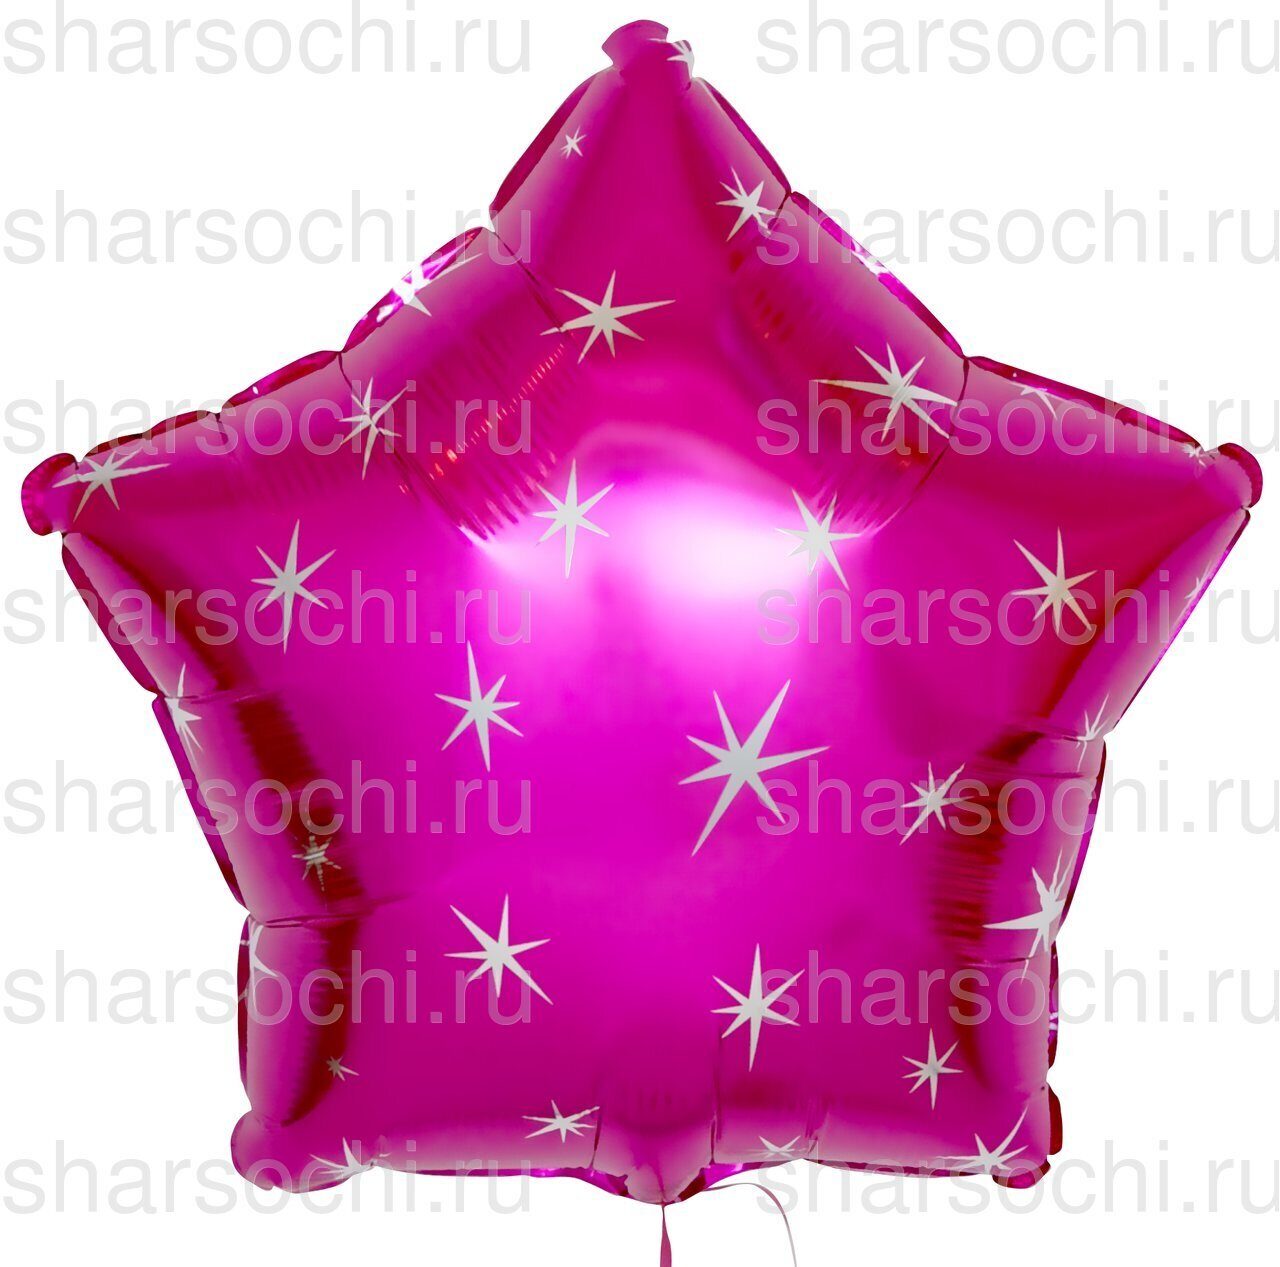 Фольгированный шар (18''/46 см) Звезда, Искры, Фуше, 1 шт.